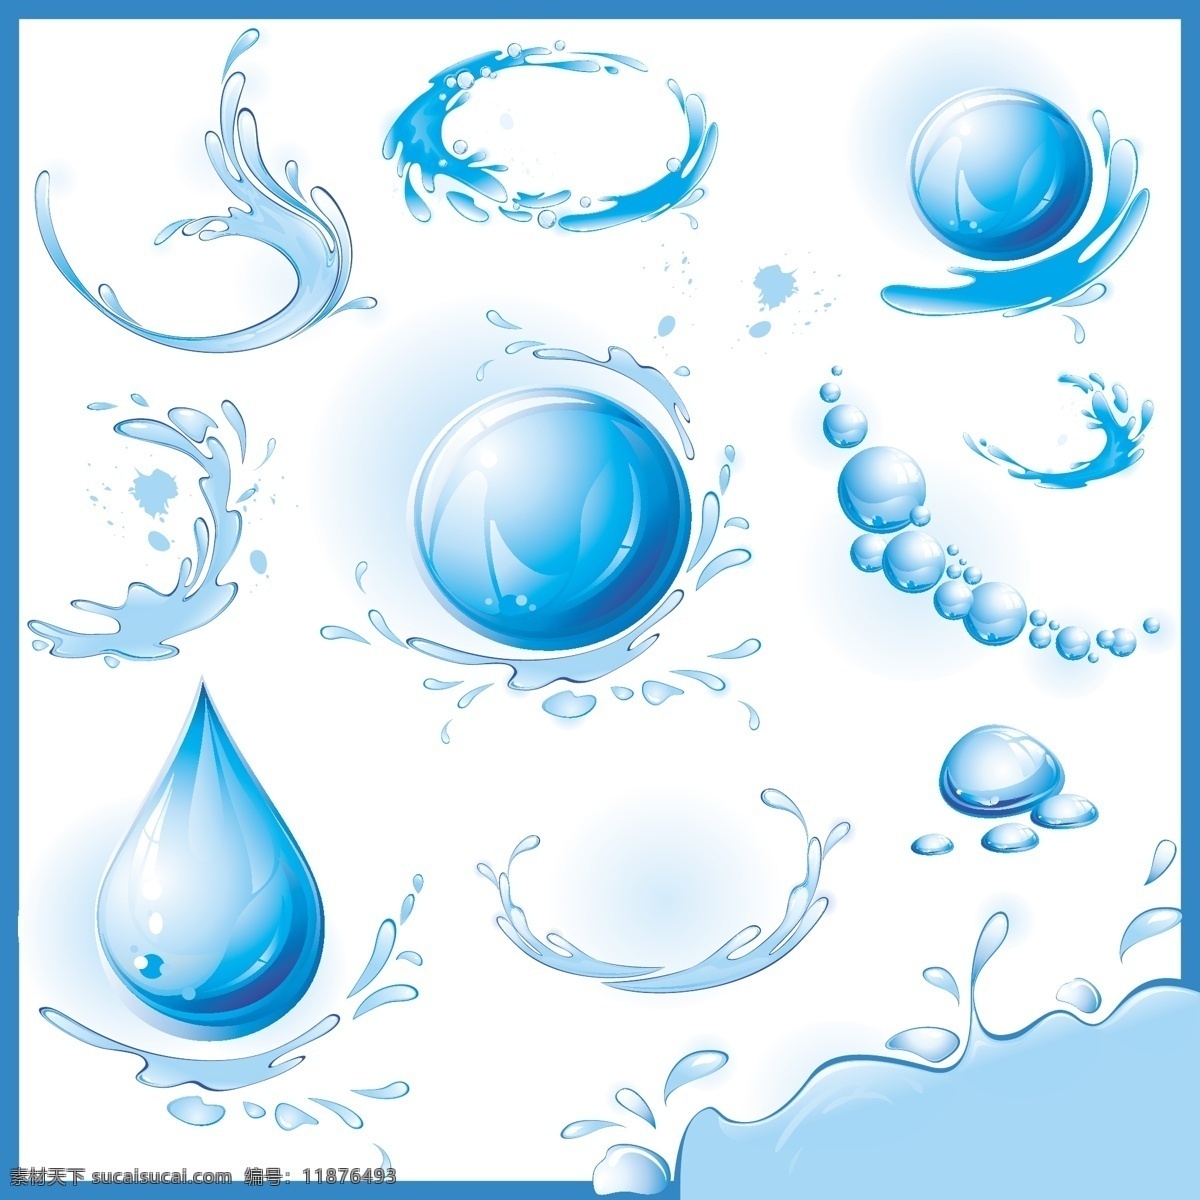 水滴效果 水滴素材 水滴免费下载 水滴 水滴背景 水滴的图片 矢量图 其他矢量图